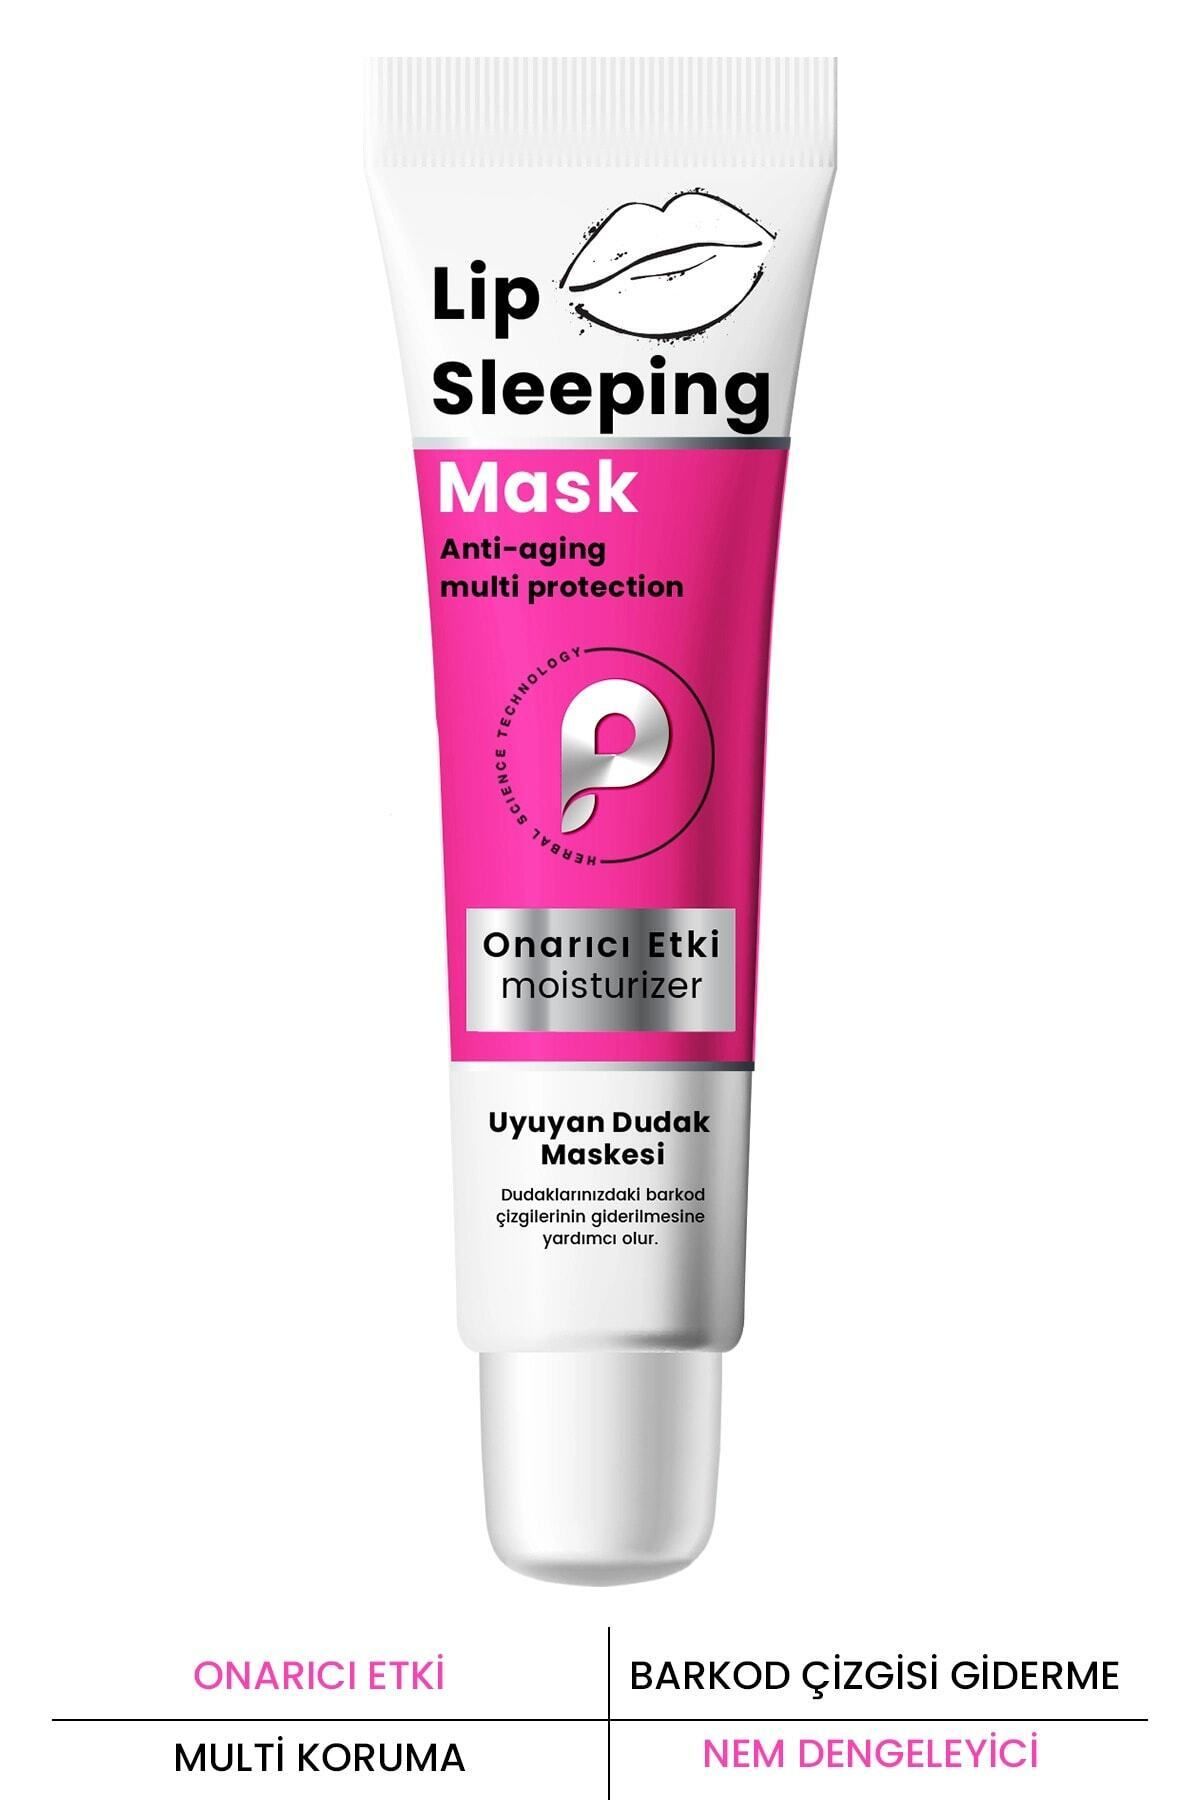 PROCSIN Nemlendirici Ve Onarıcı Dudak Maskesi Lip Sleeping Mask 15 ml